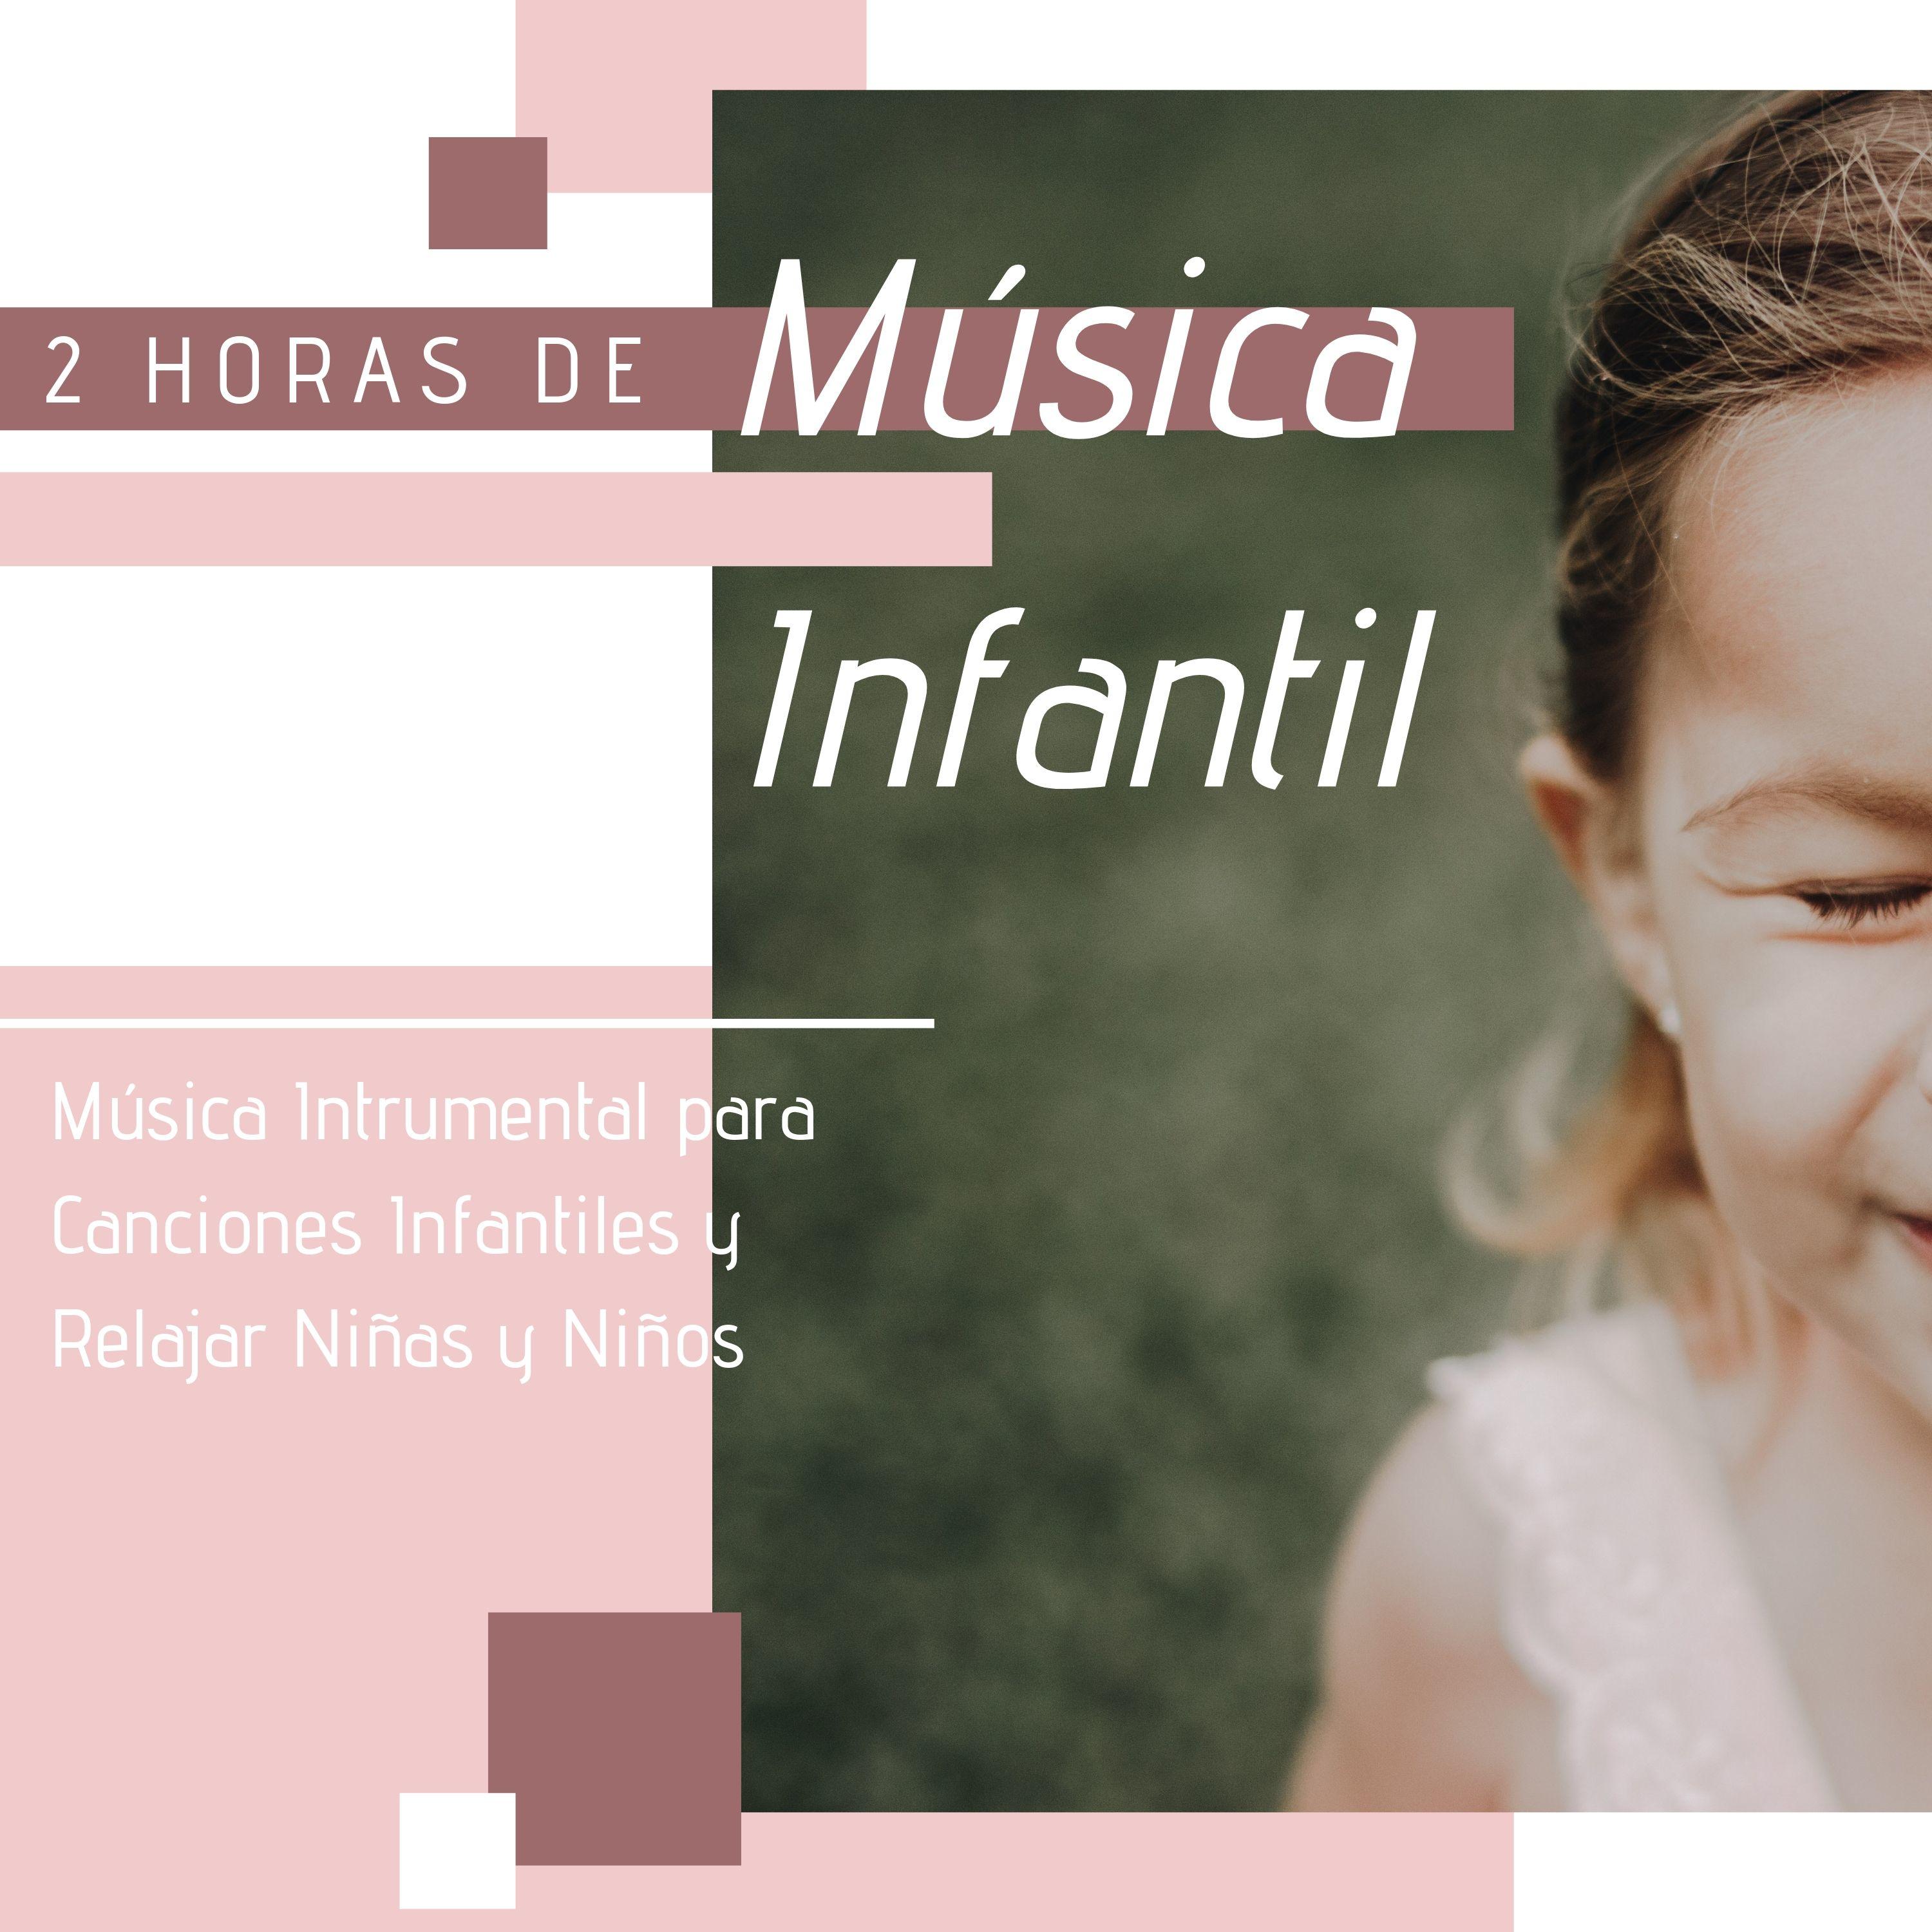 2 Horas de Mu sica Infantil  Mu sica Intrumental para Canciones Infantiles y Relajar Ni as y Ni os